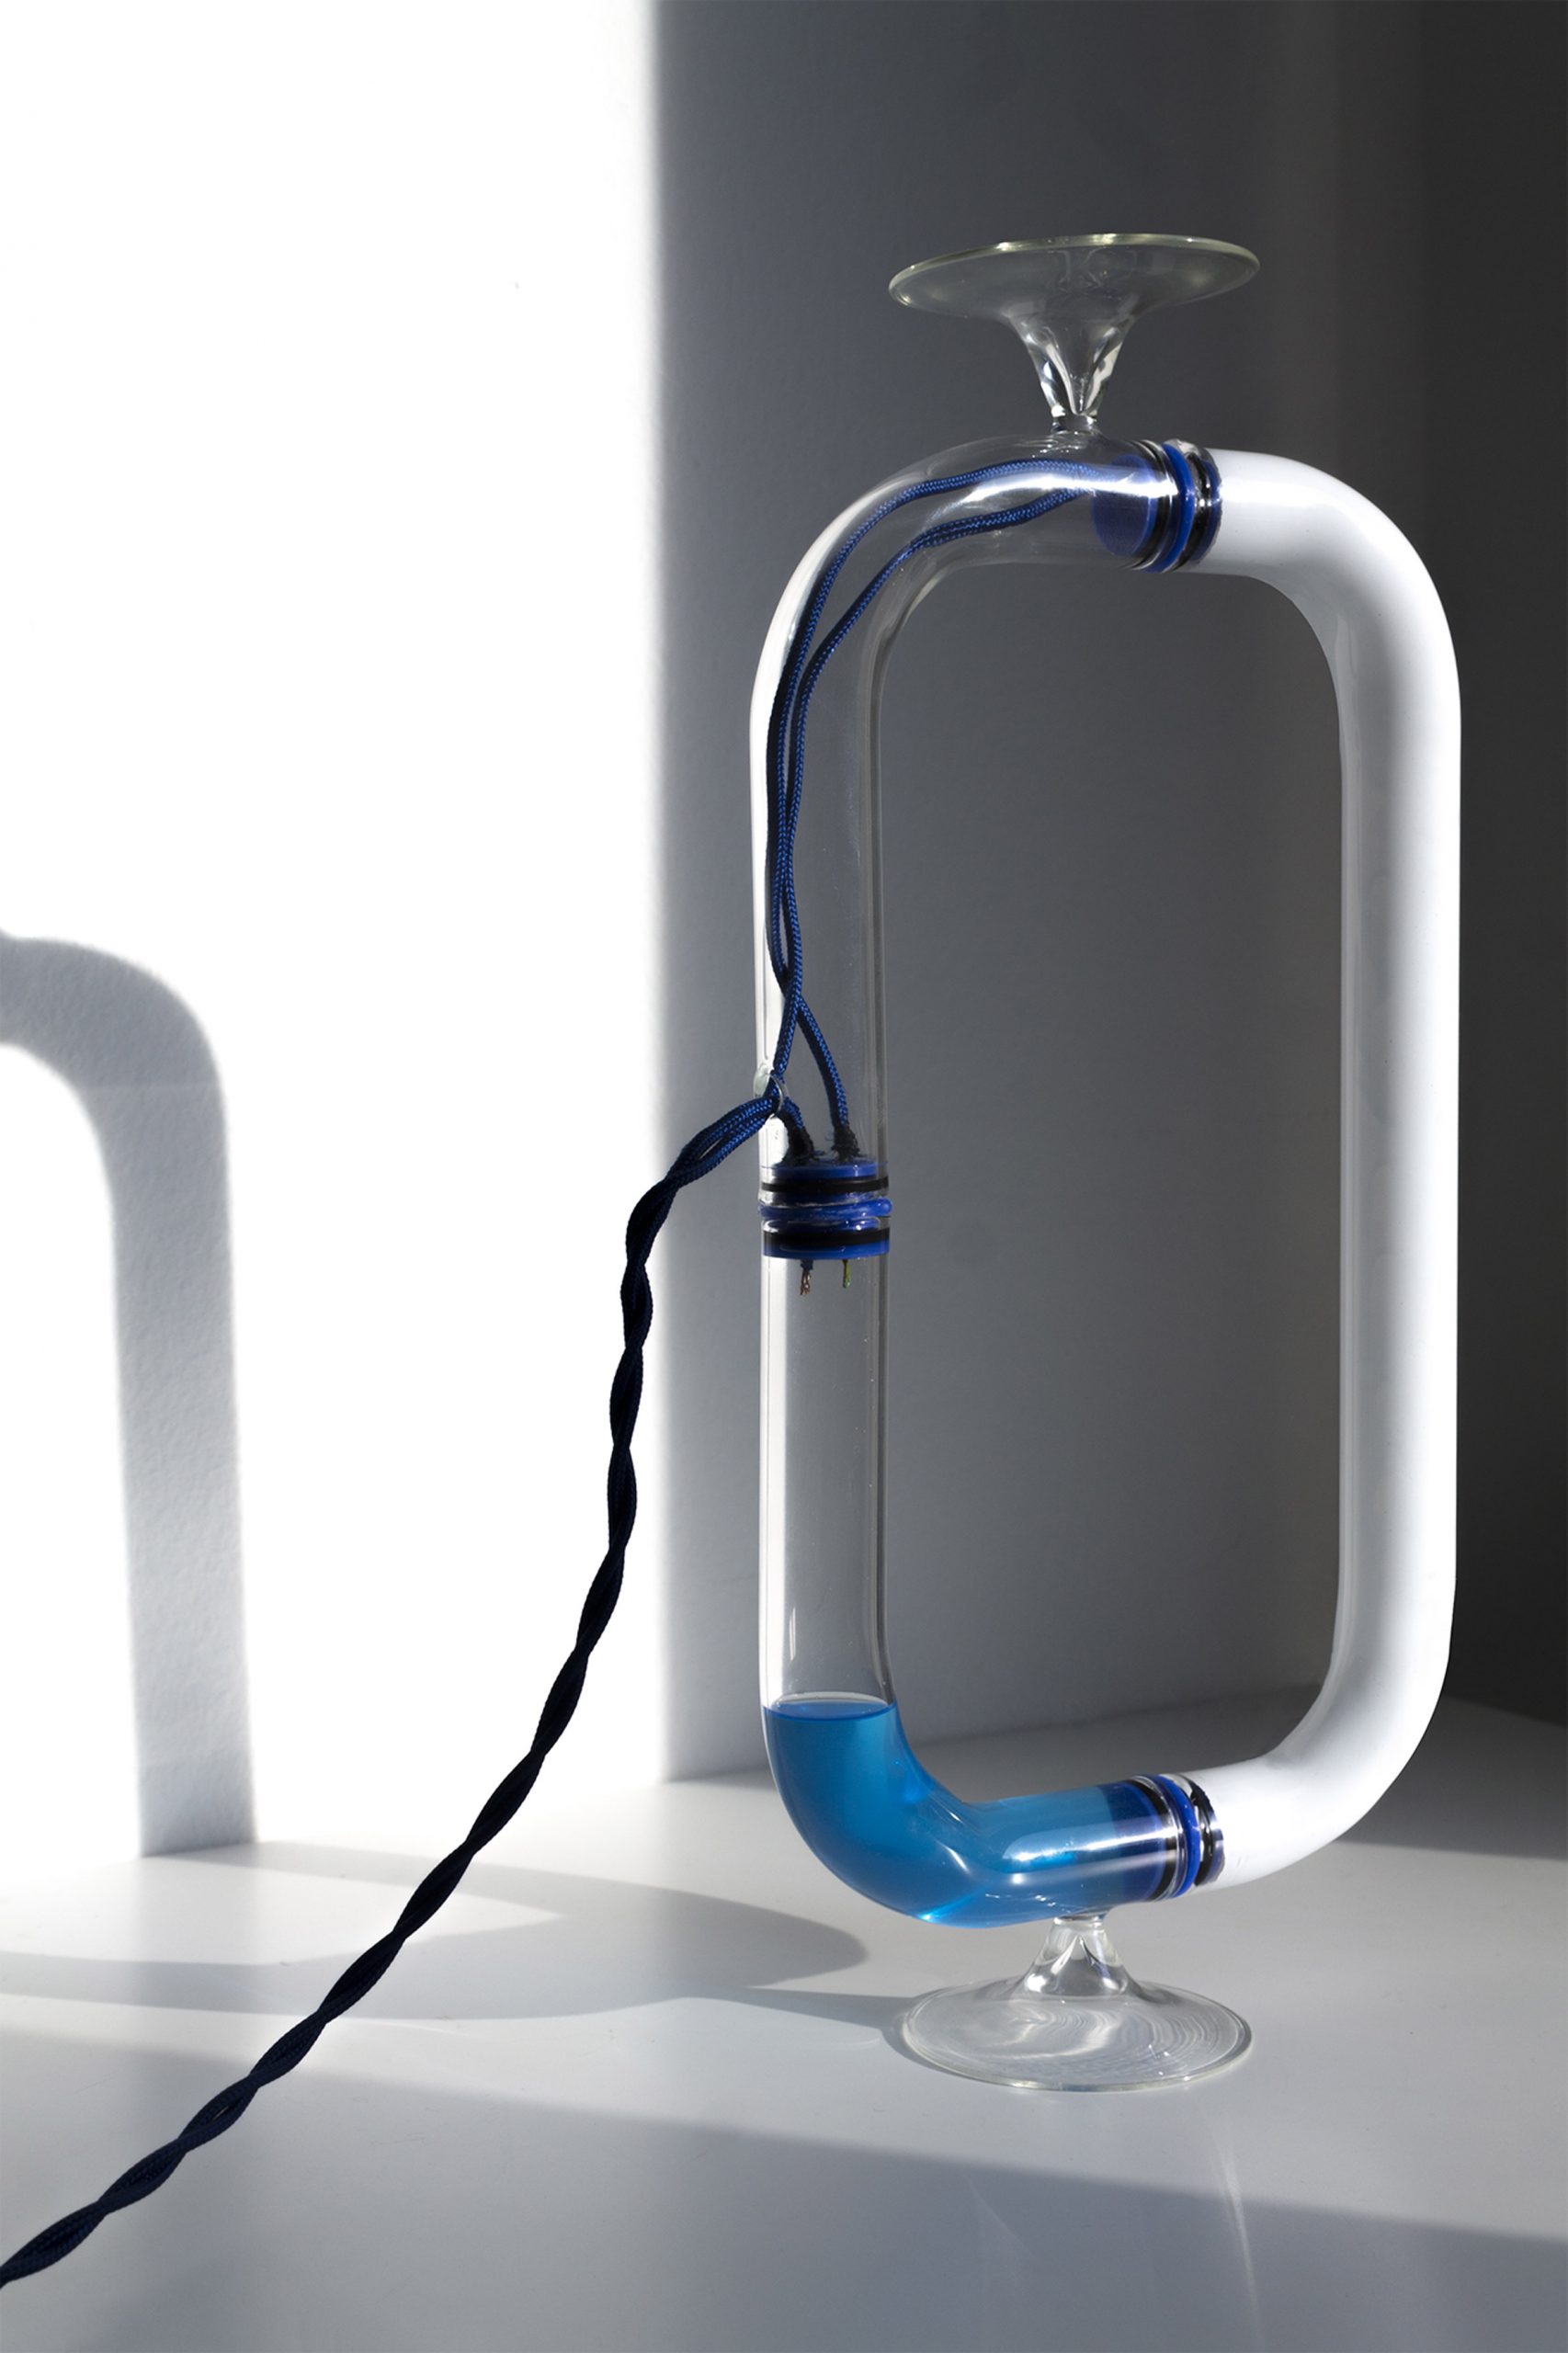 Tubular Circuiti Liquidi lamp uses blue liquid to activate light